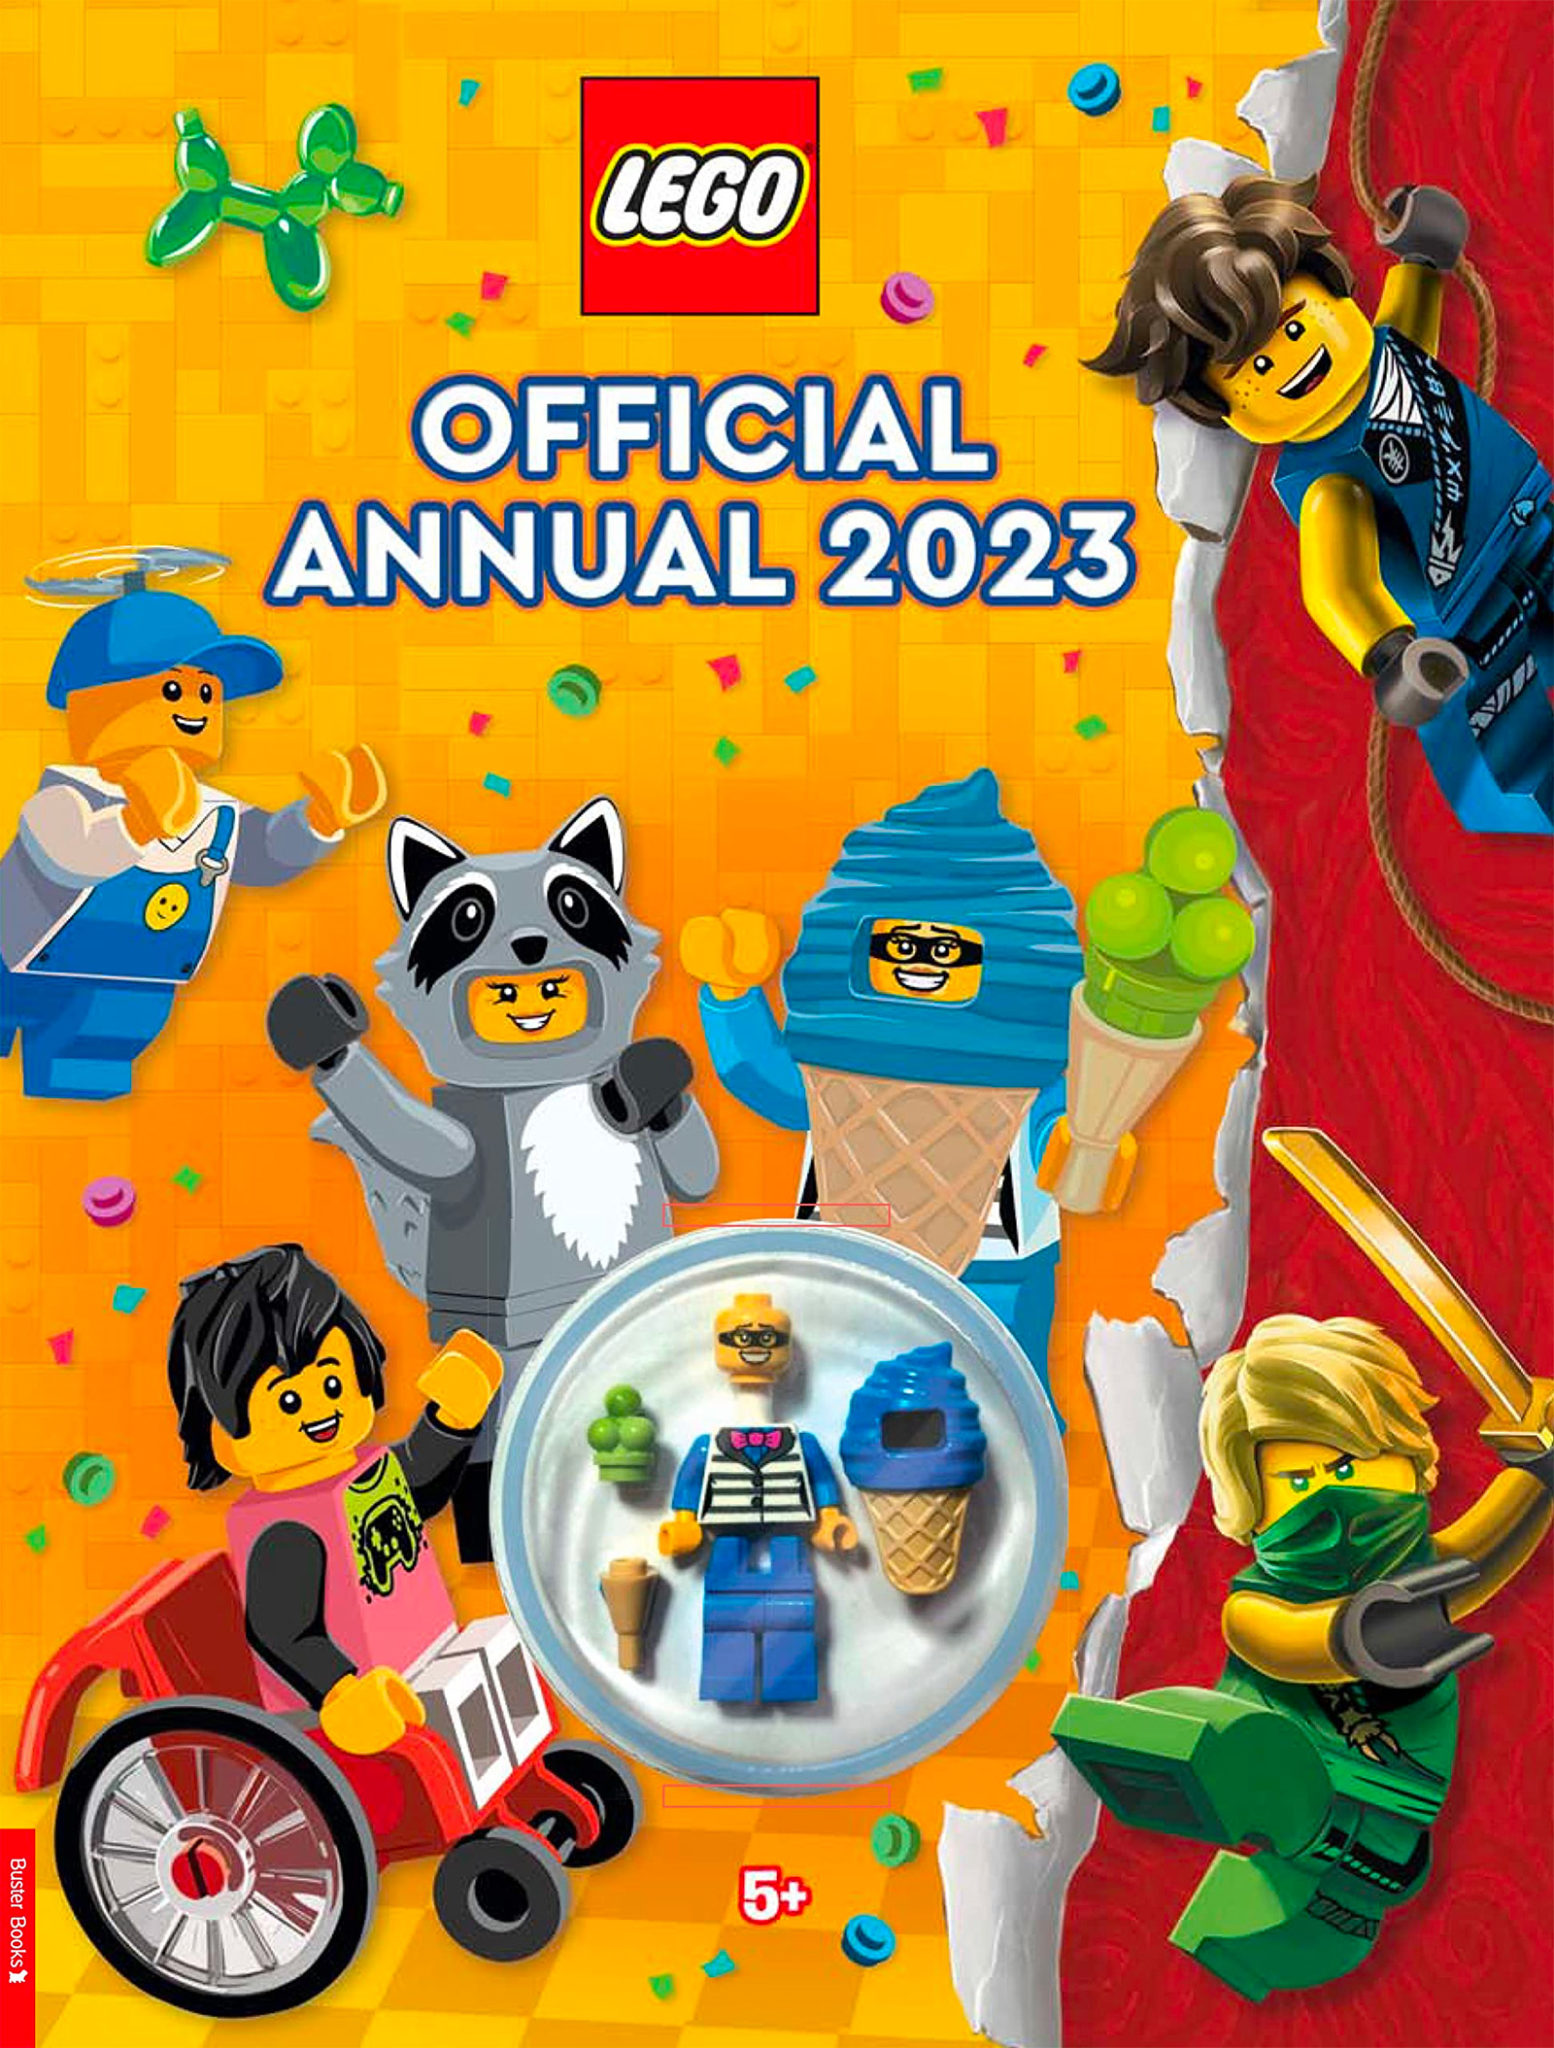 LEGO Offiziell Annual 2023: ee méi Charakter am Kostüm fir Är Sammlung